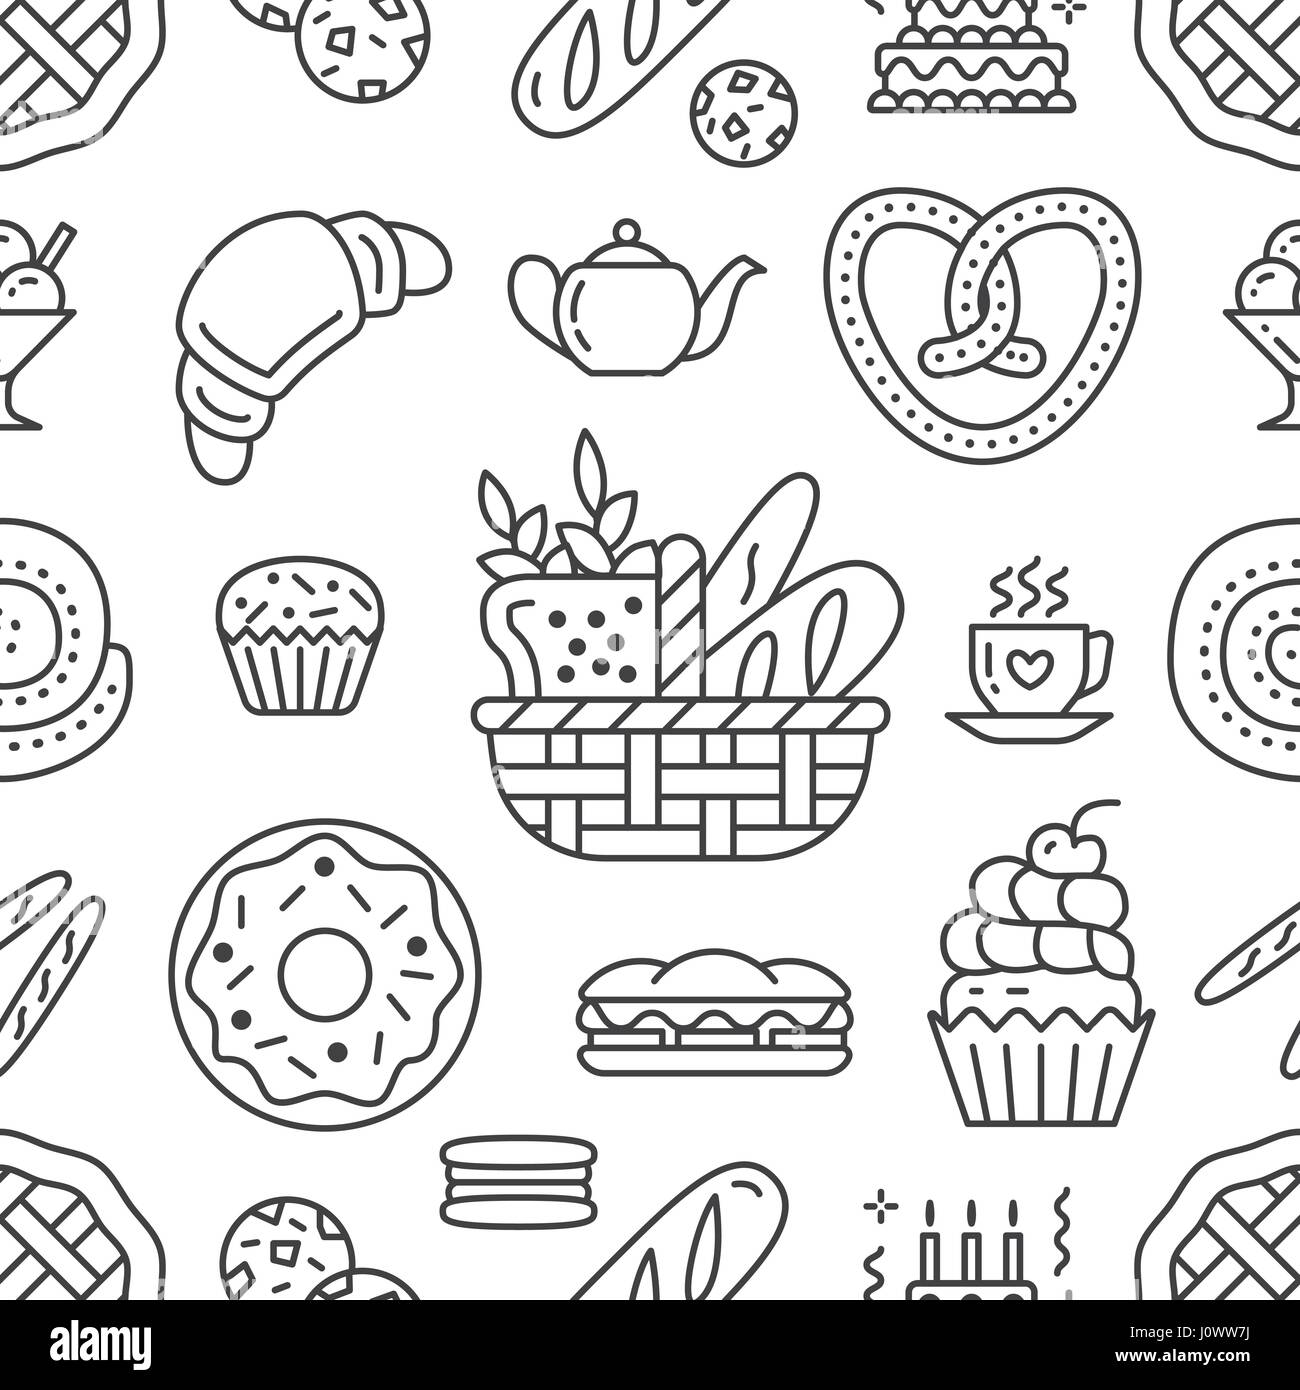 Panificio seamless pattern, vettore alimentare di sfondo nero, colore bianco. Prodotti dolciari sottile linea icone - torta, croissant, muffin, pasticceria, tortina, torta. Carino illustrazione ripetuta per il negozio di dolci Illustrazione Vettoriale